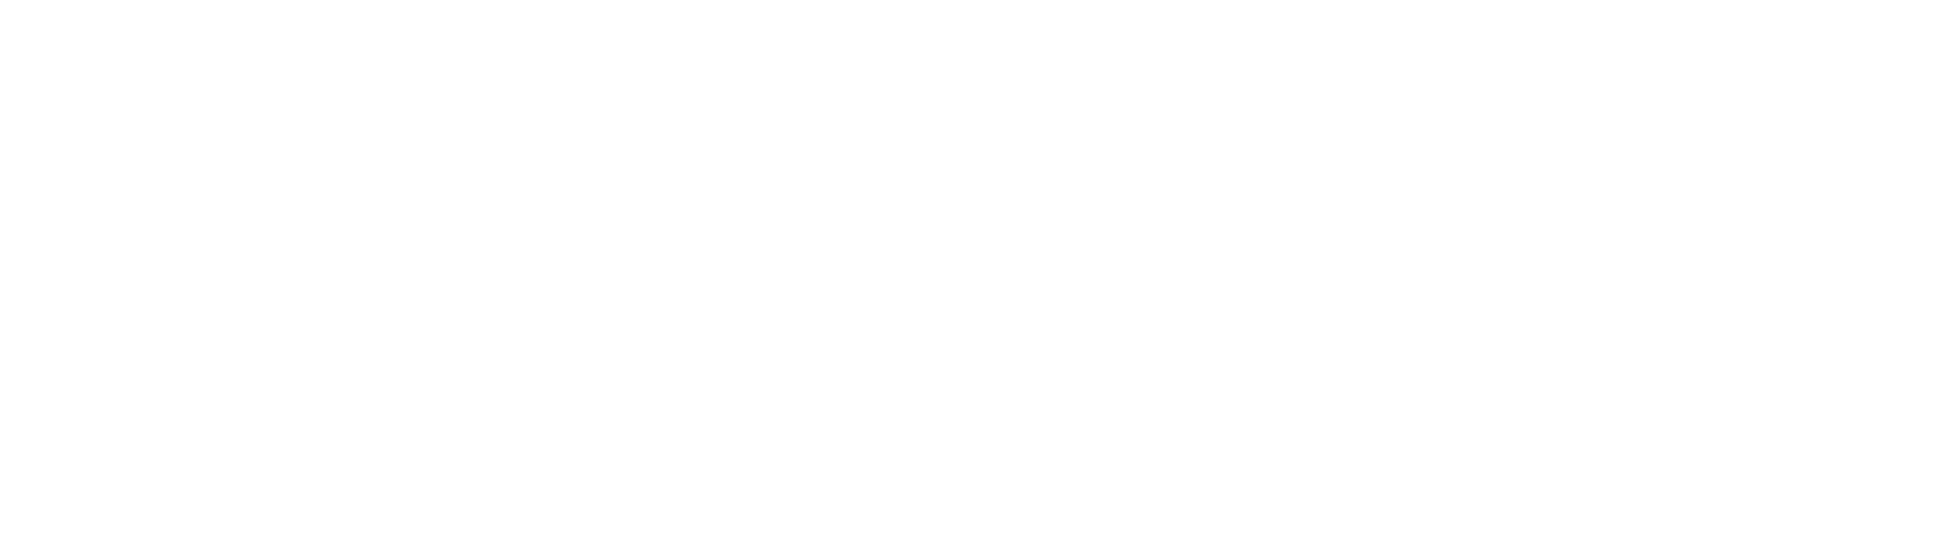 Nursebuddy white logo